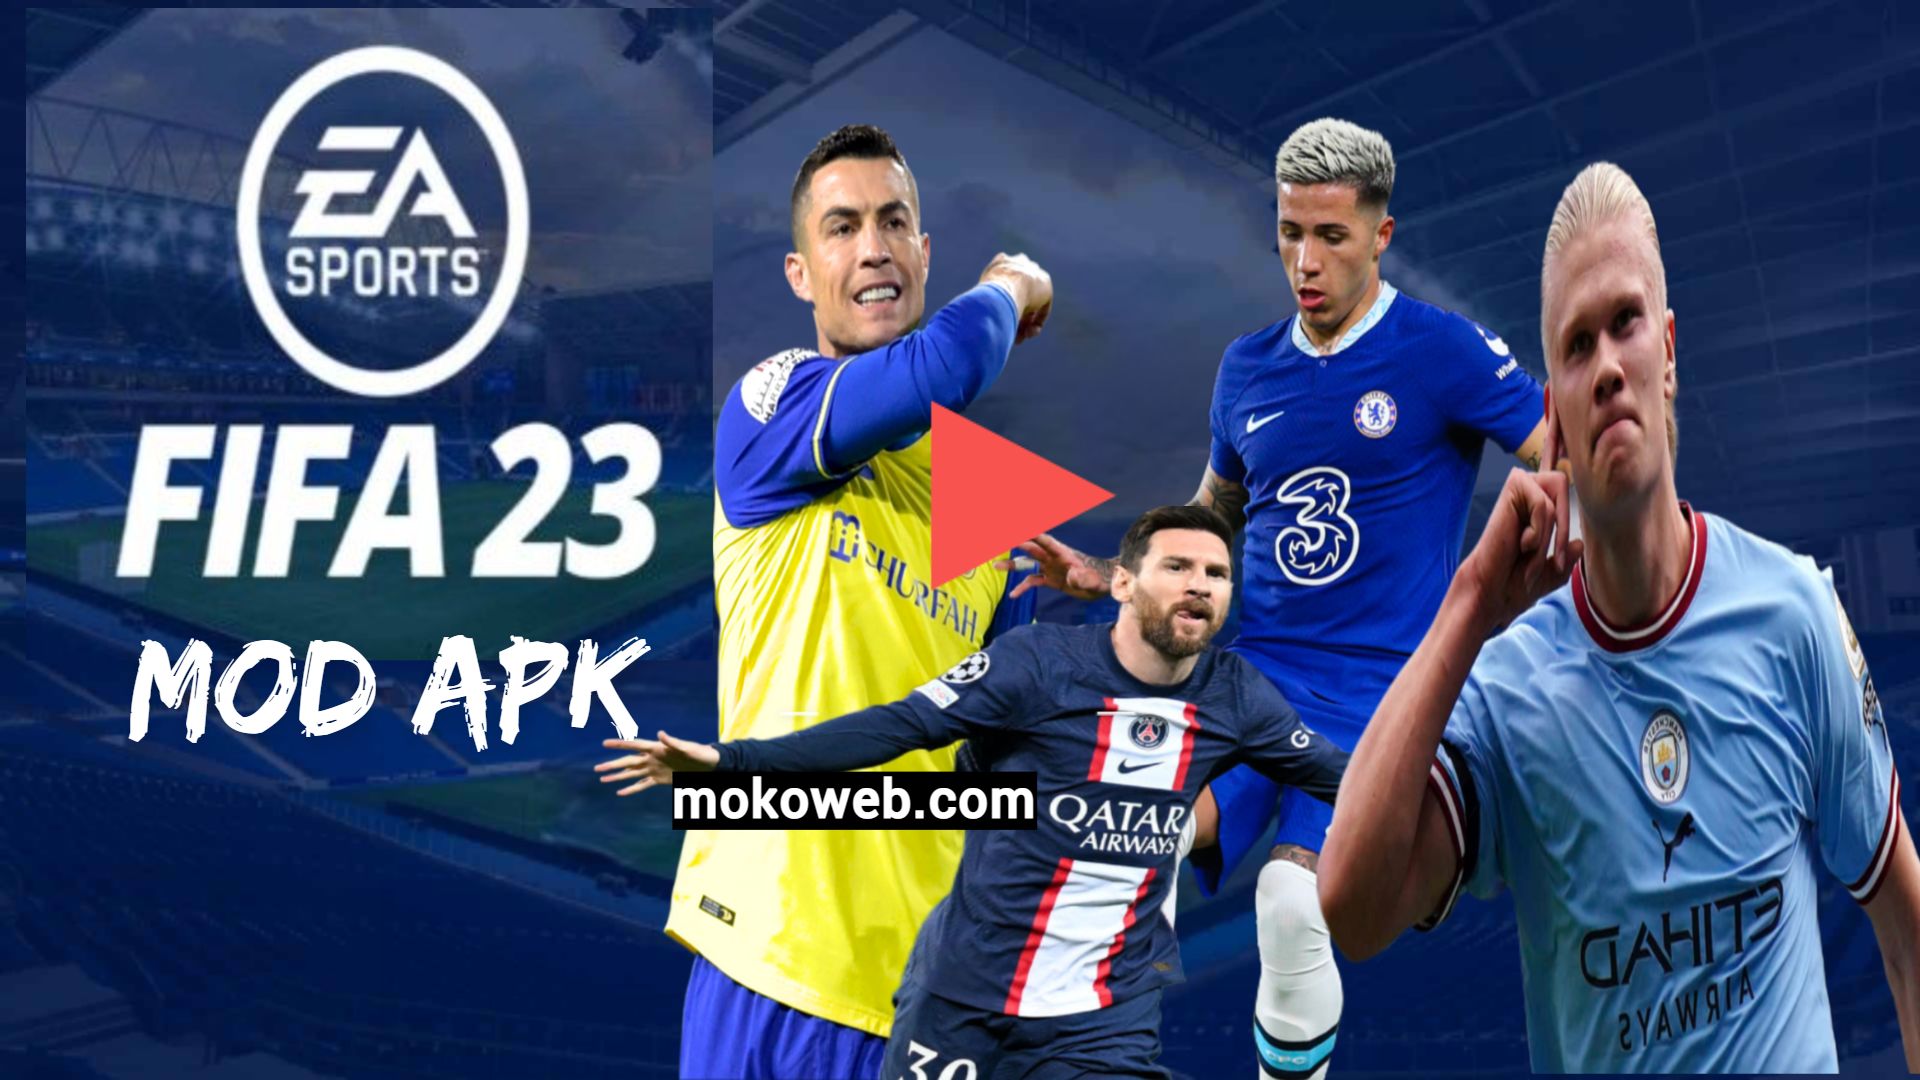 FIFA 22 APK OBB New Kits 2022 Download